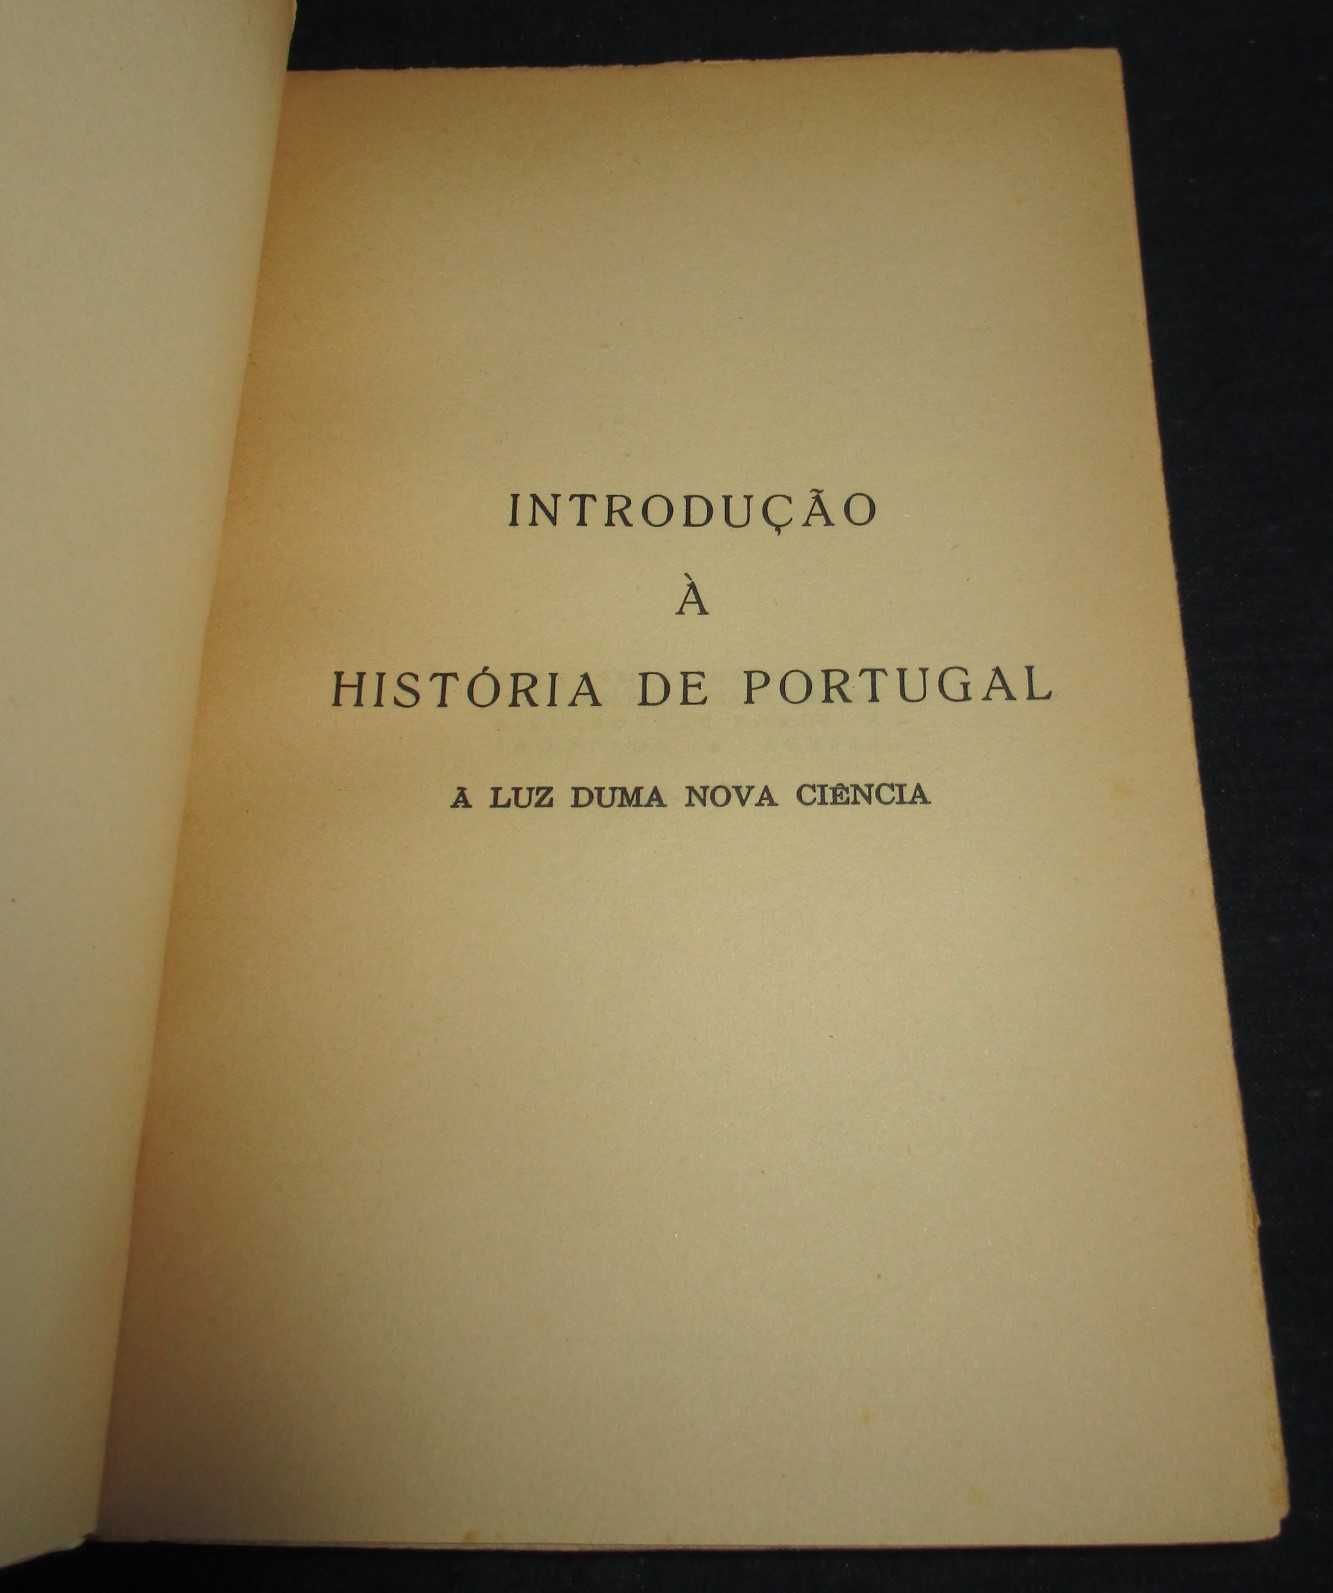 Livro Introdução à História de Portugal Mário Melo